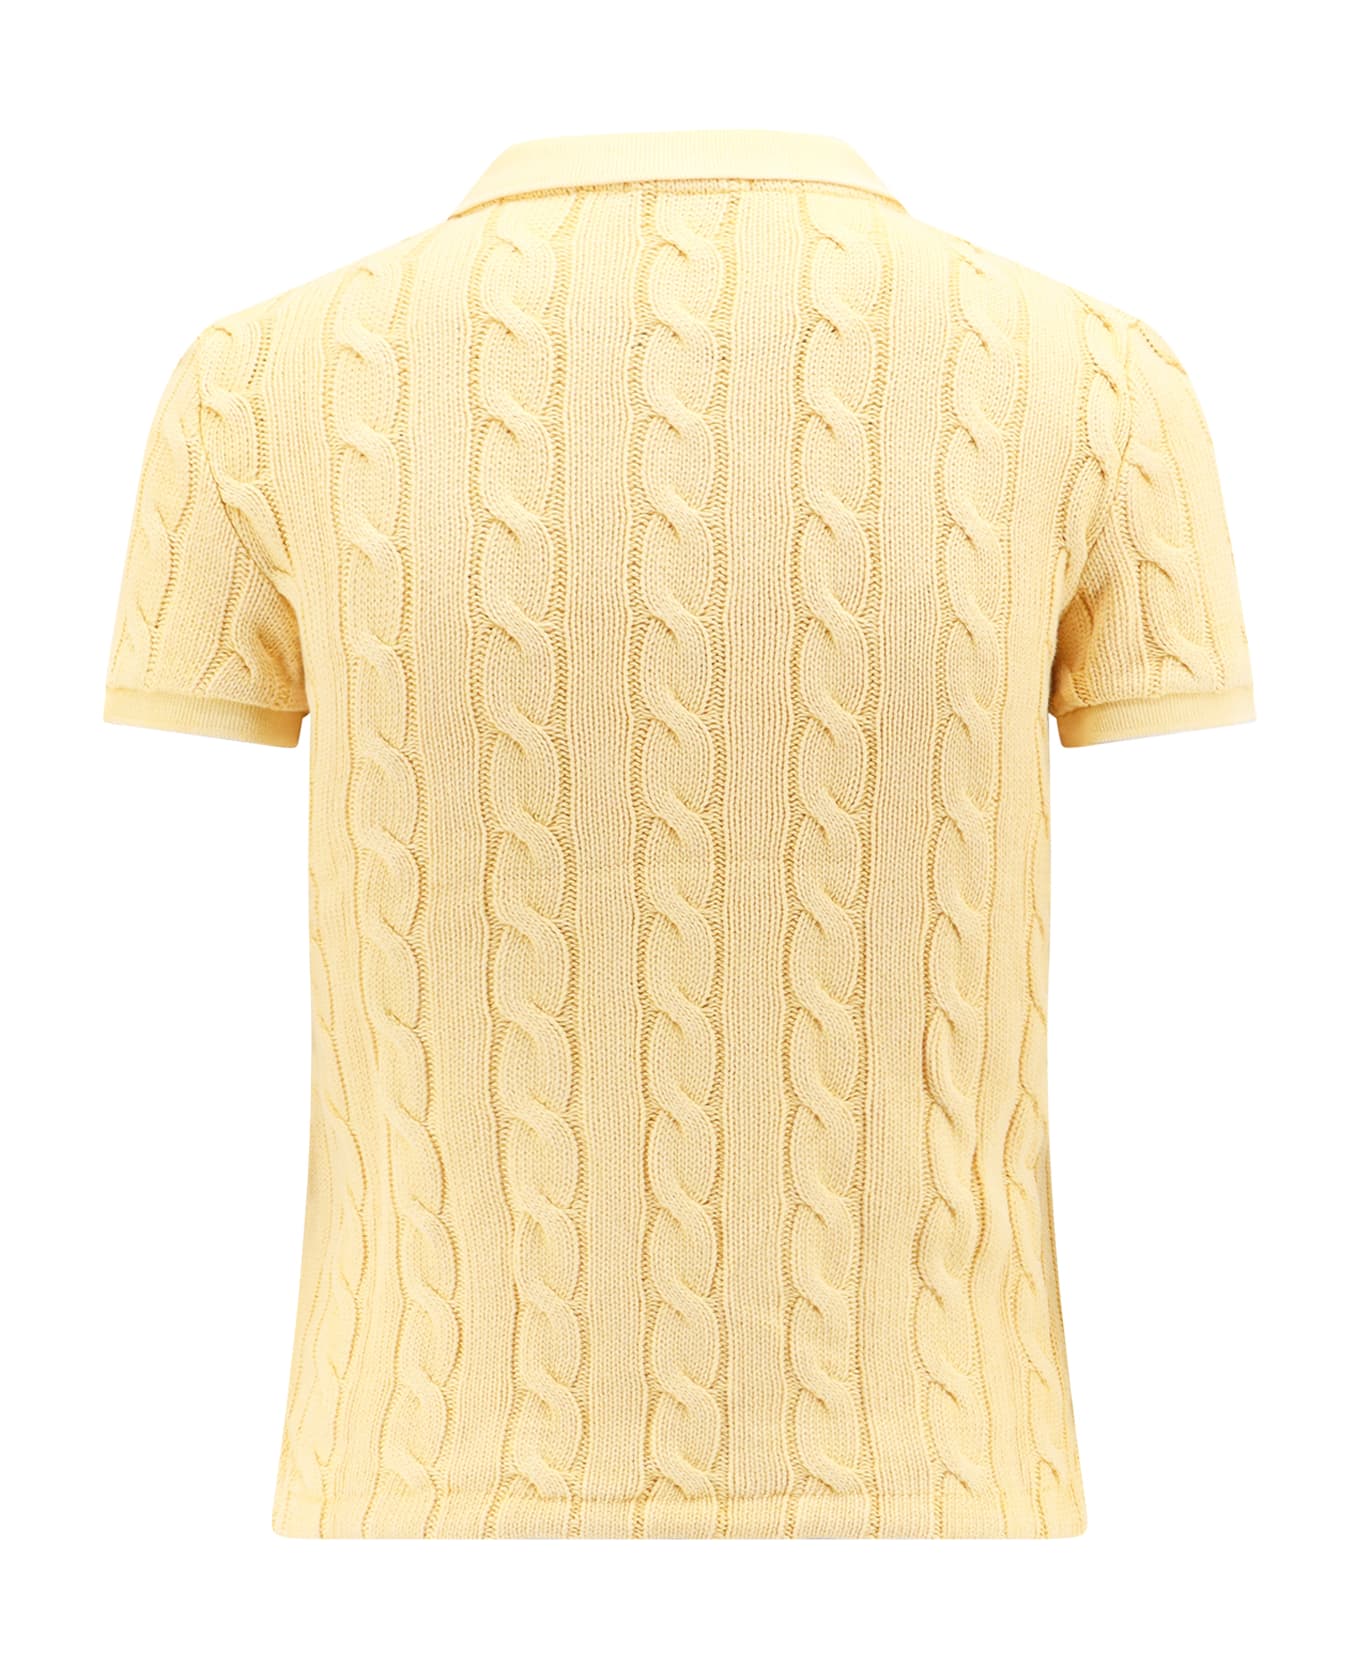 Ralph Lauren Polo Shirt - Fall Yellow